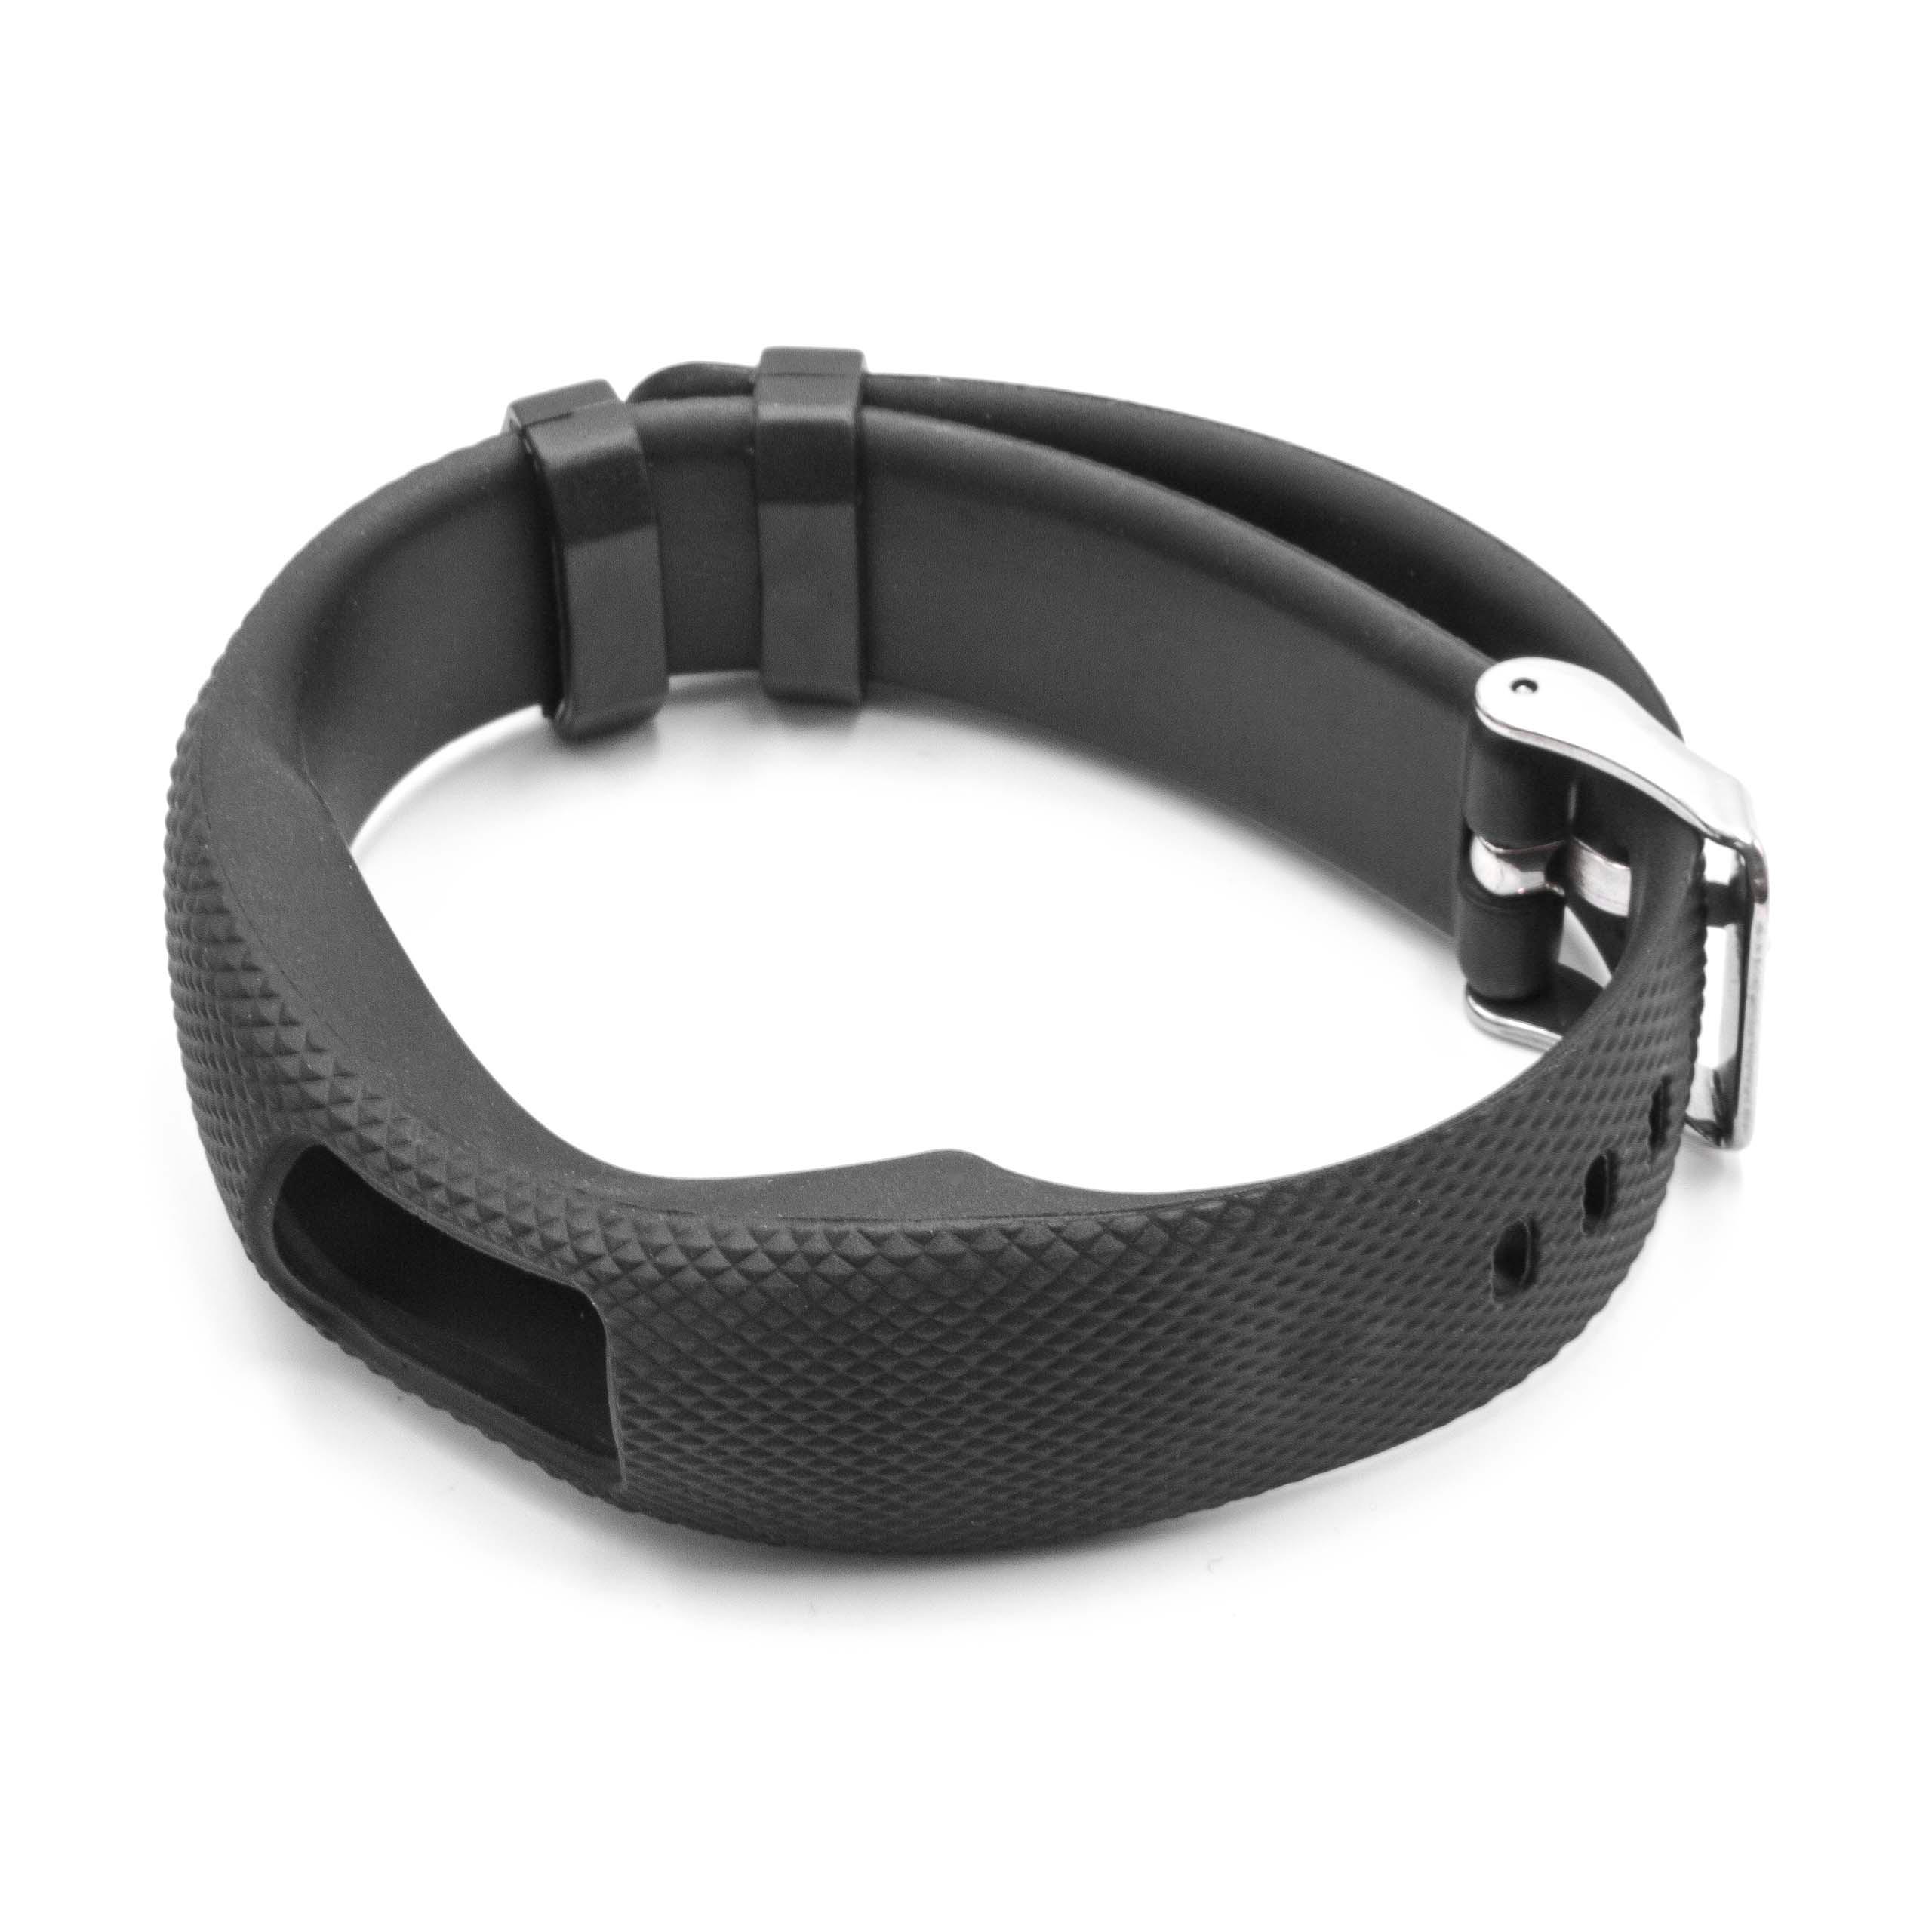 cinturino per Garmin Vivofit Smartwatch - 24,5 cm lunghezza, 19,5mm ampiezza, nero